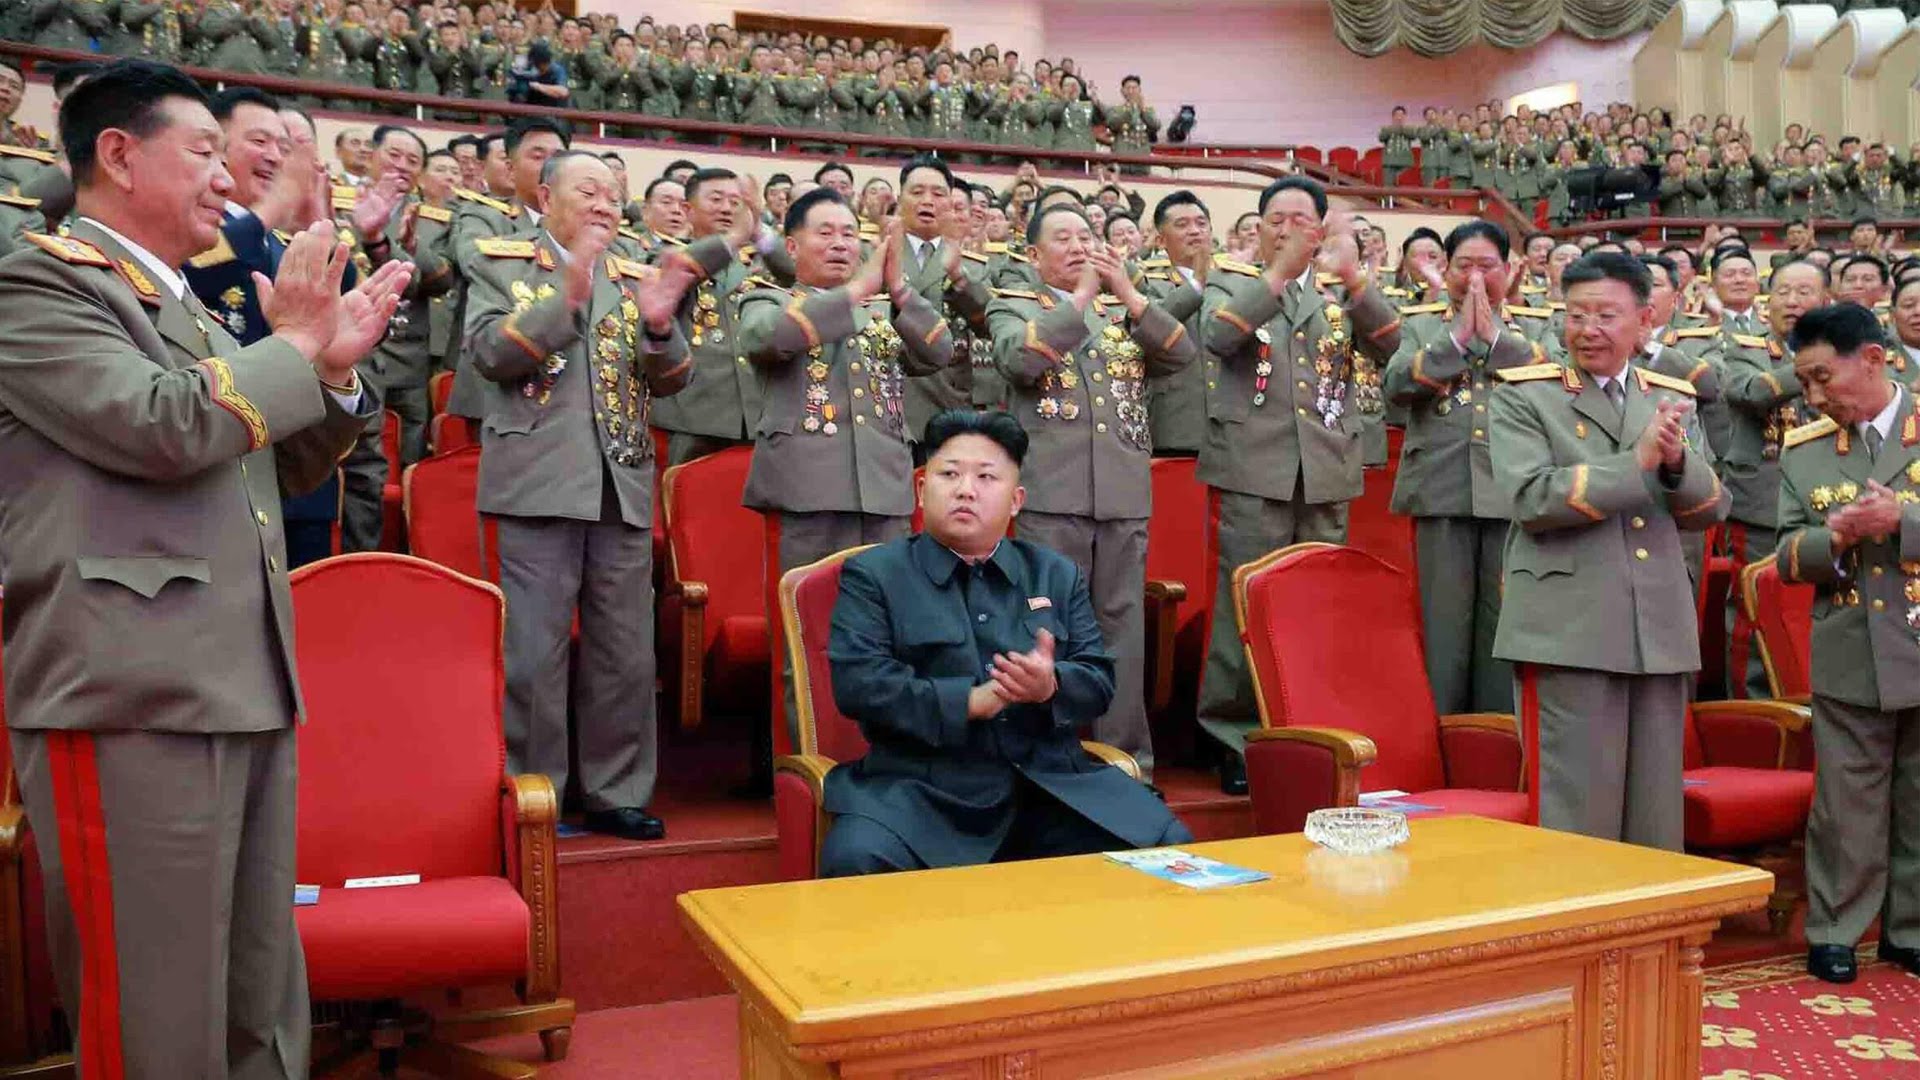 جديد زعيم كوريا.. إعدام 5 ضباط مخابرات كبار بطريقة بشعة